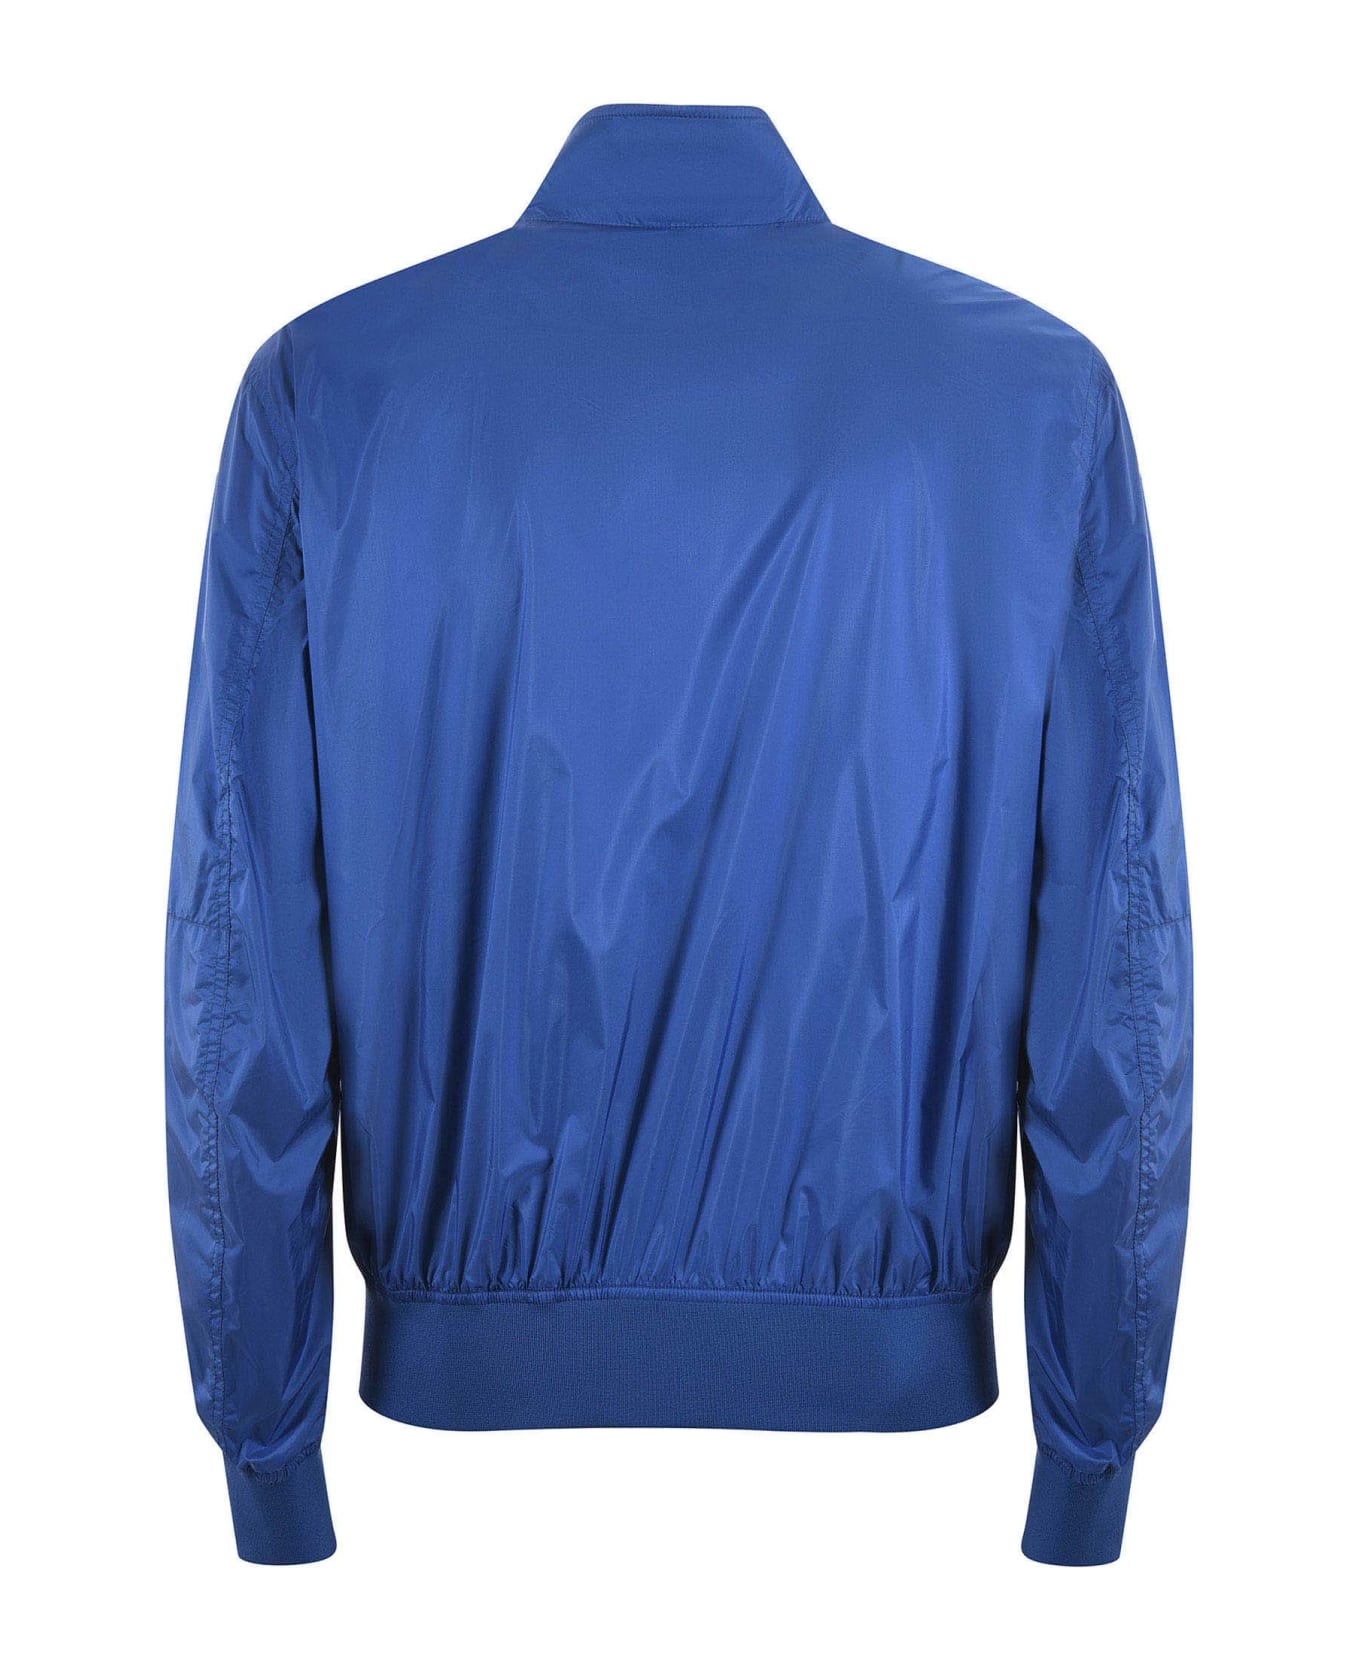 Blauer Jacket - Blu cobalto